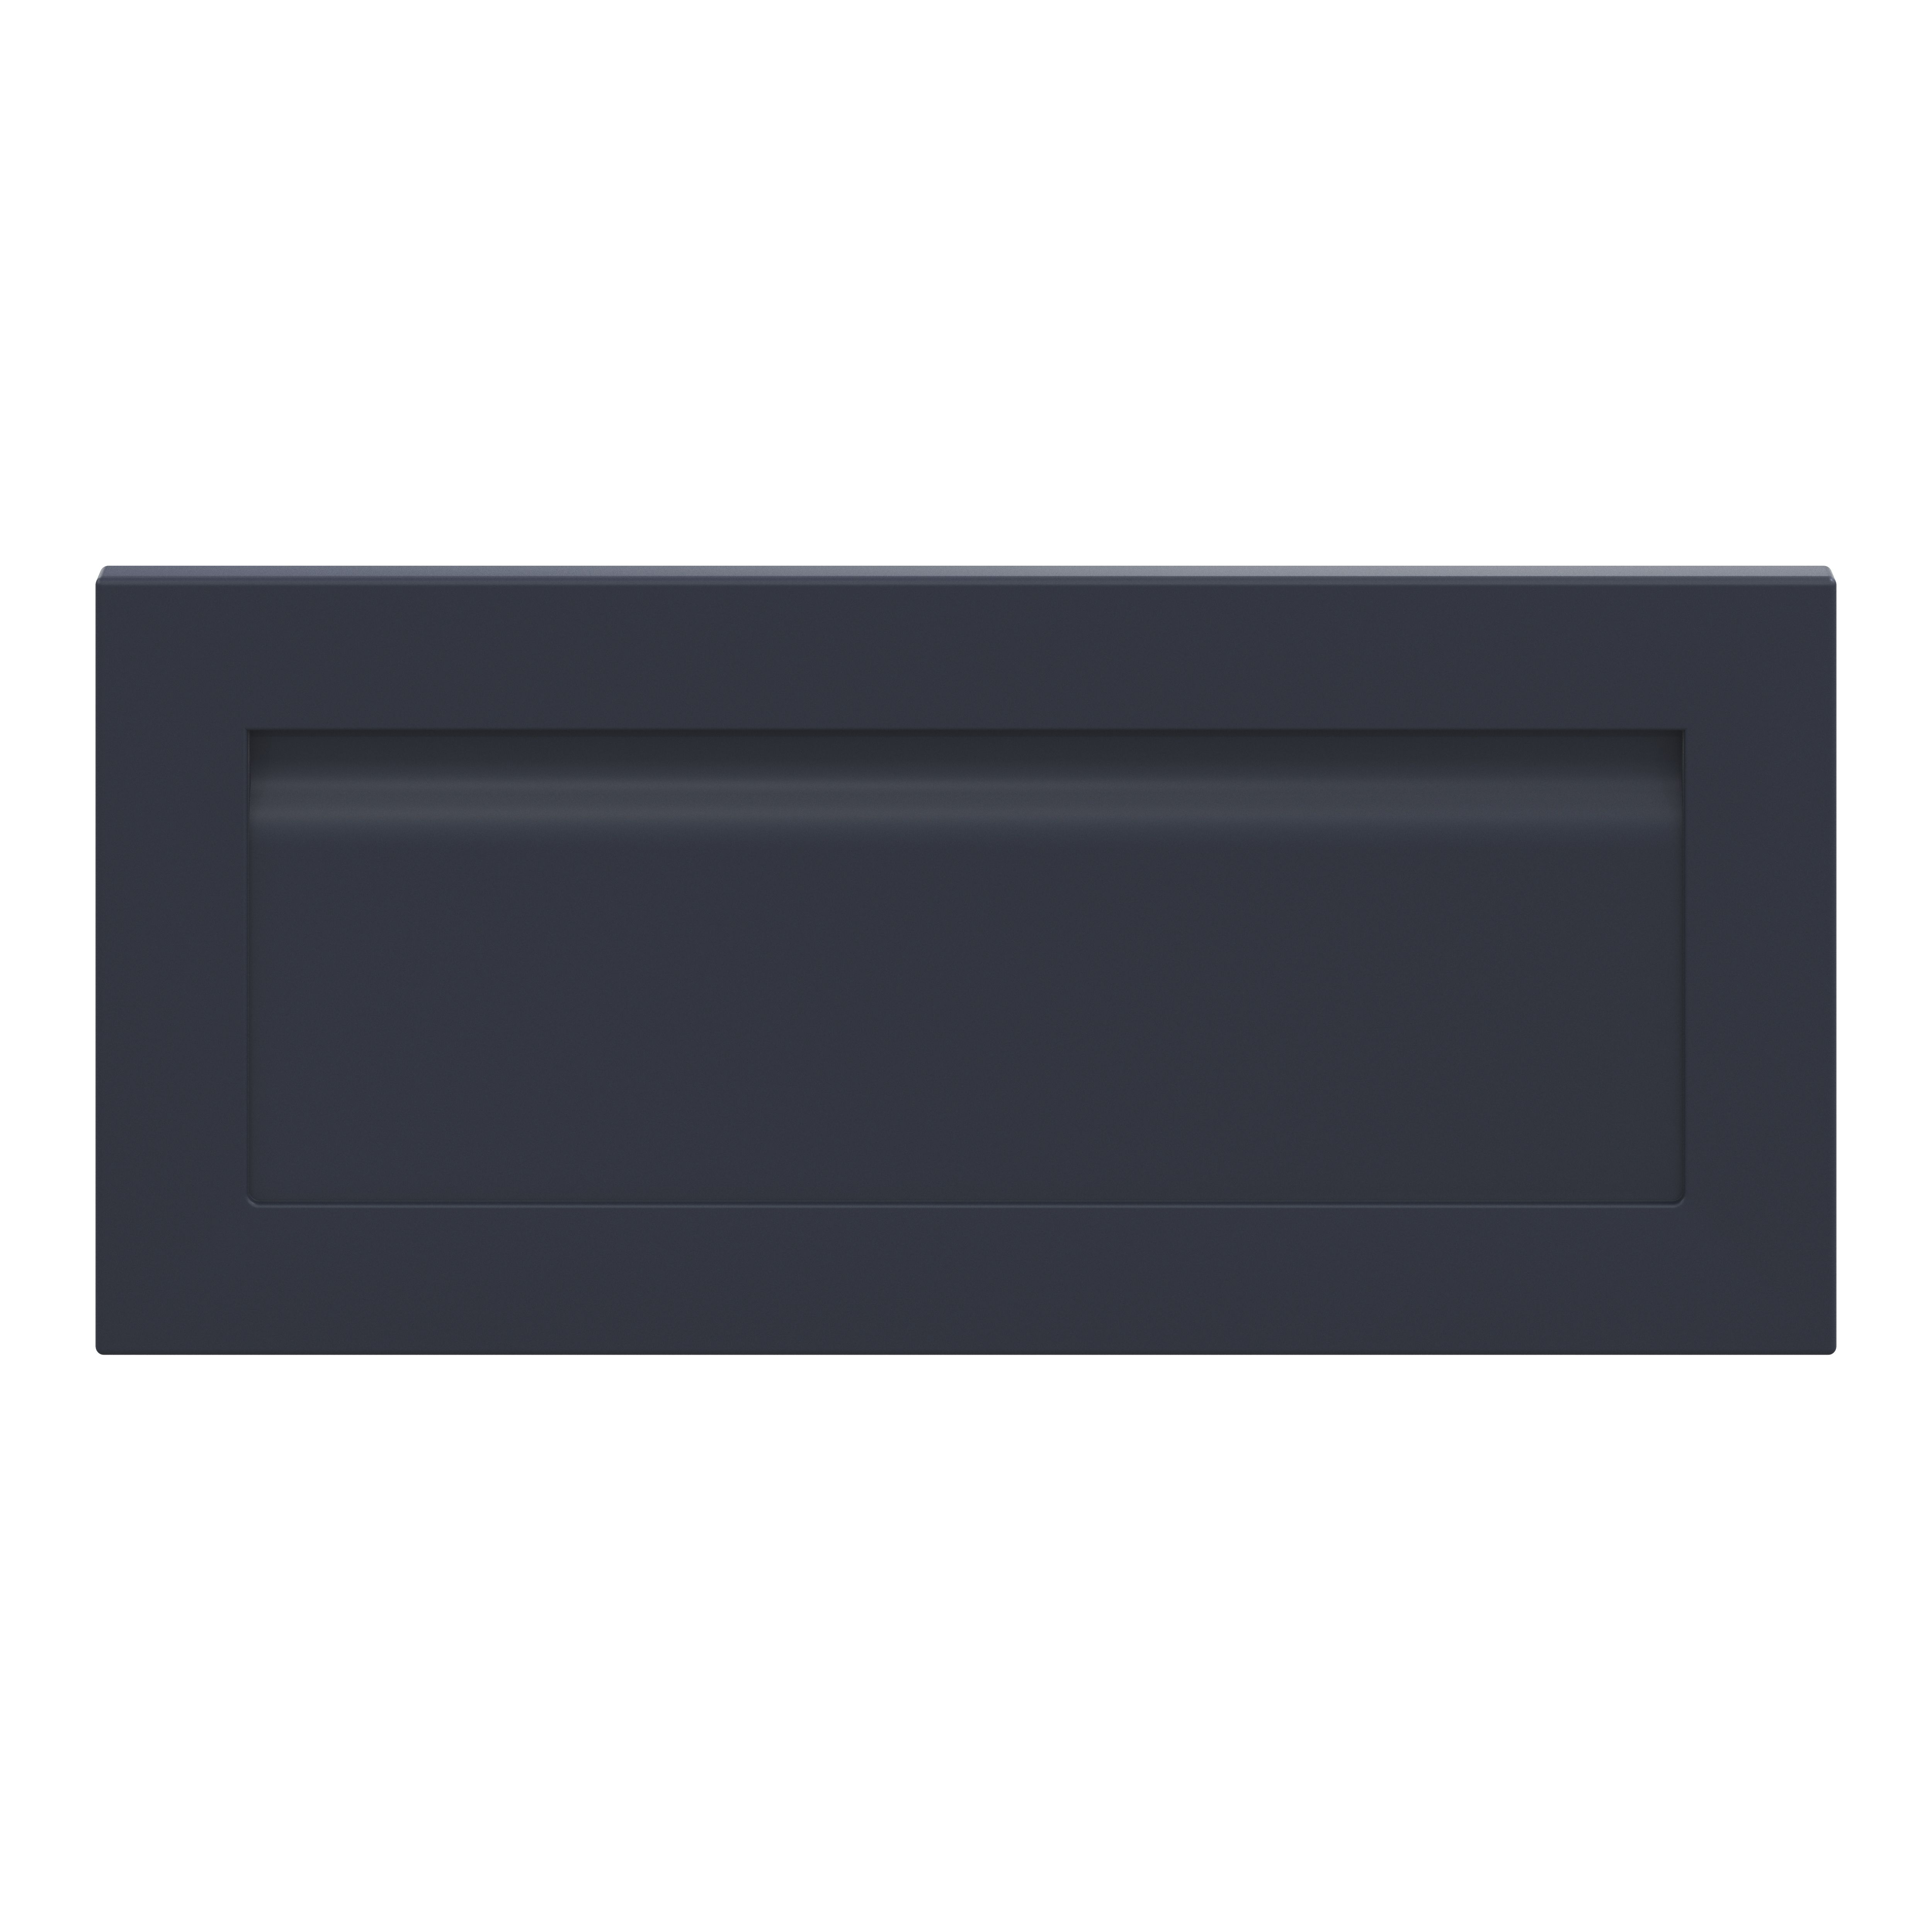 GoodHome Garcinia Matt navy blue shaker Drawer front, bridging door & bi fold door, (W)800mm (H)356mm (T)20mm